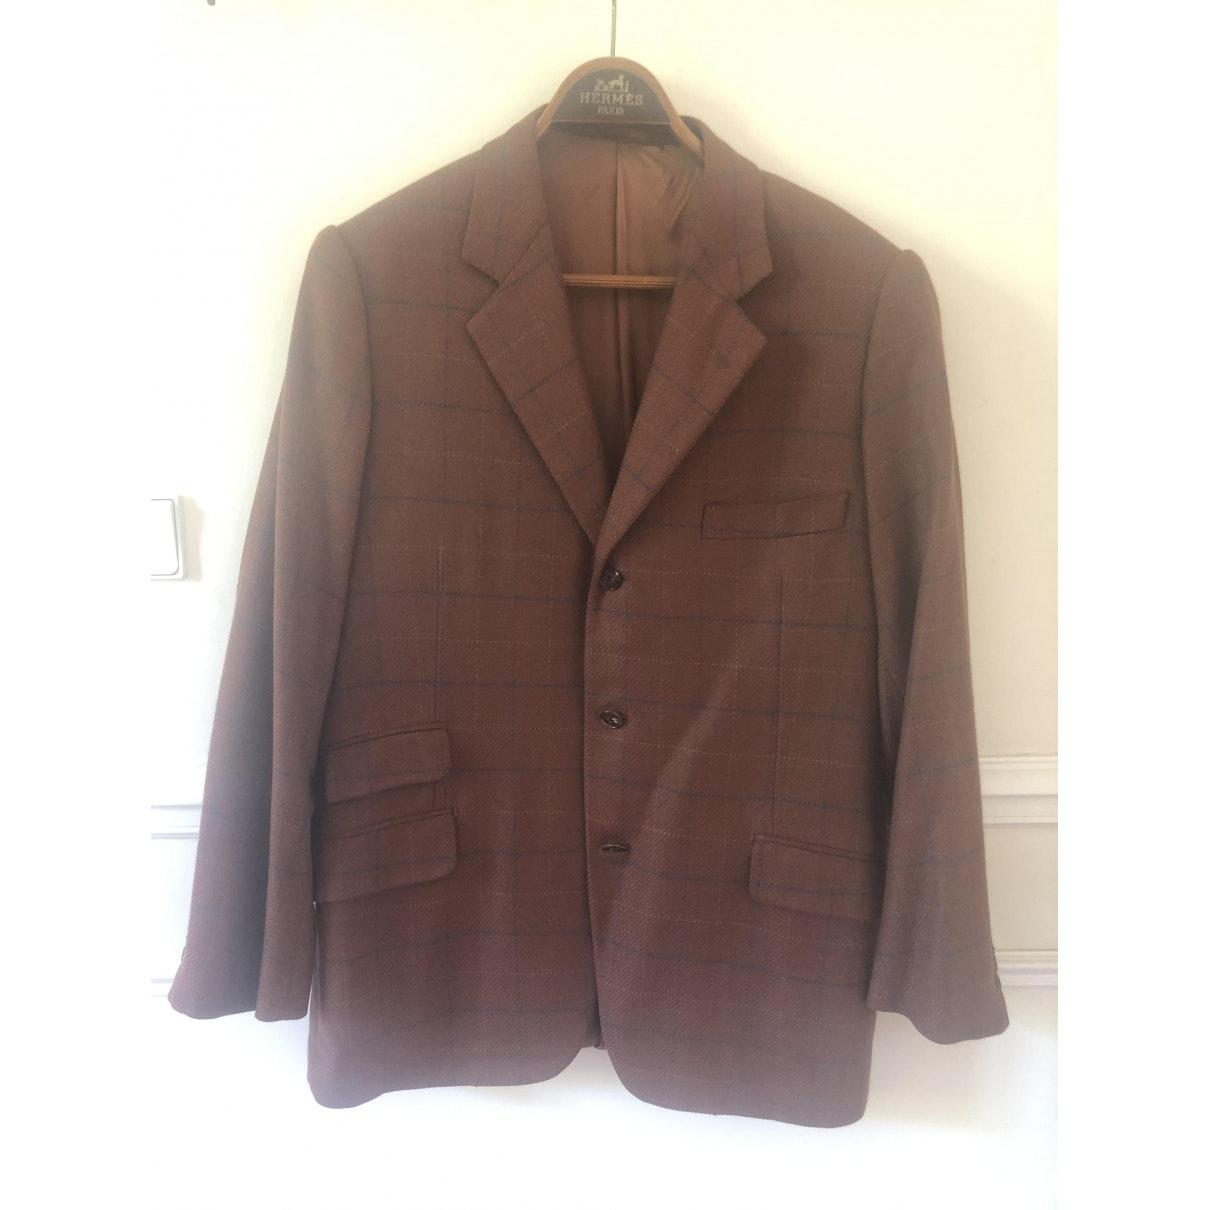 Hermès Cashmere Vest in Brown for Men - Lyst